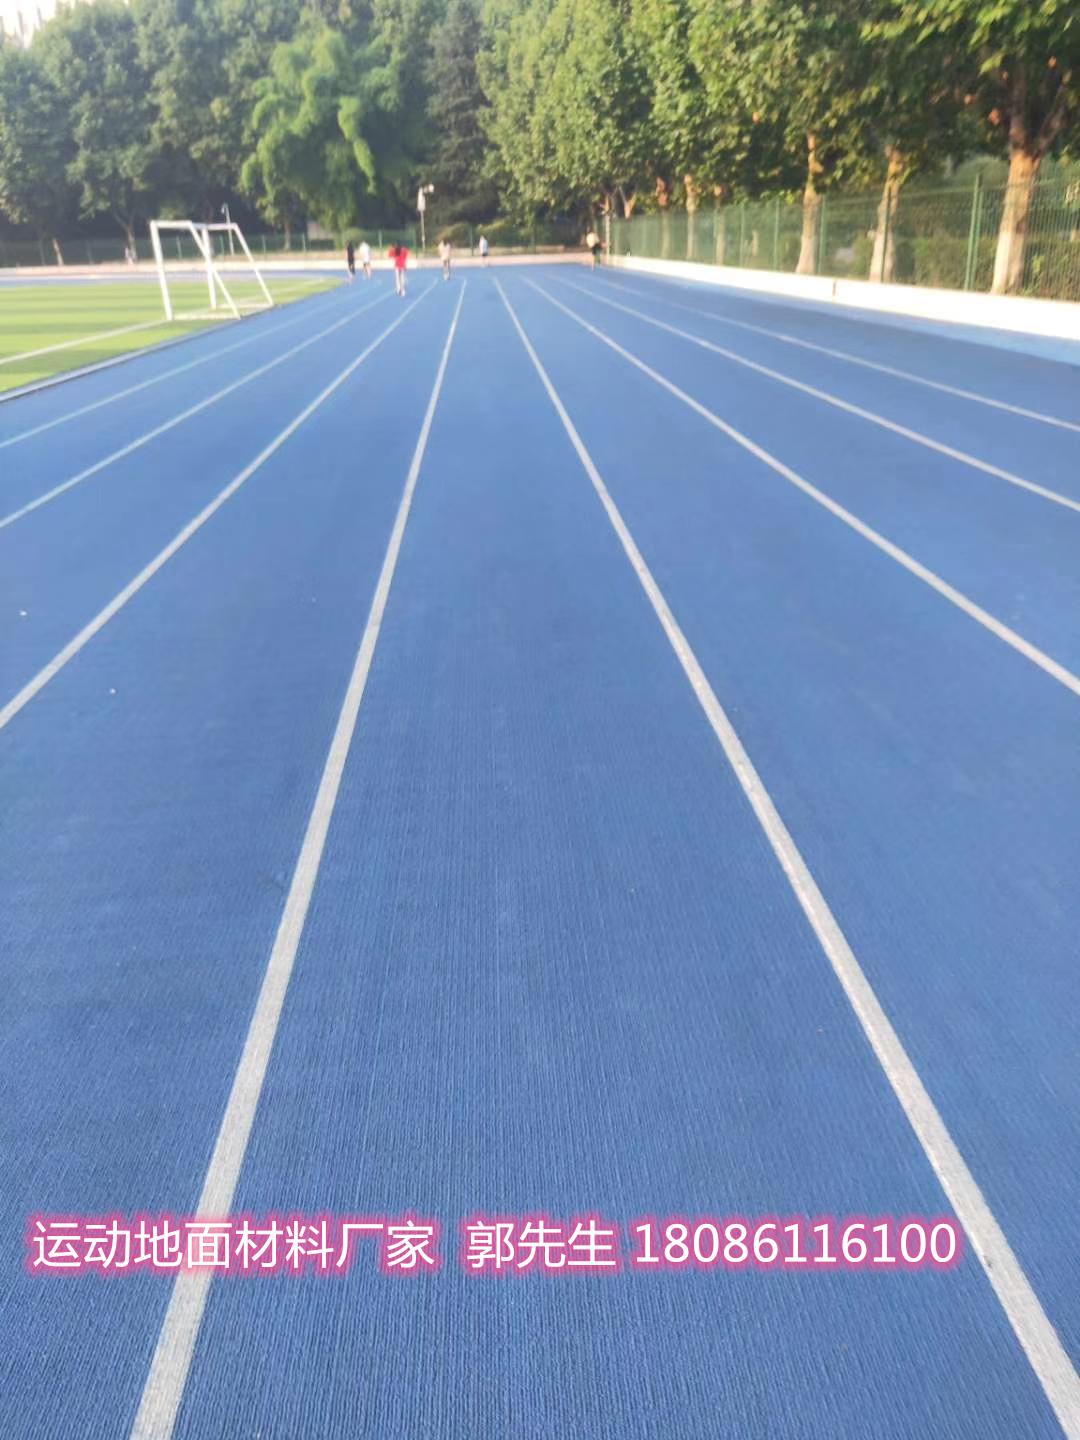 同样的材料为何做出来的塑胶跑道颜色leyu.体育(中国)官方网站不一(图1)